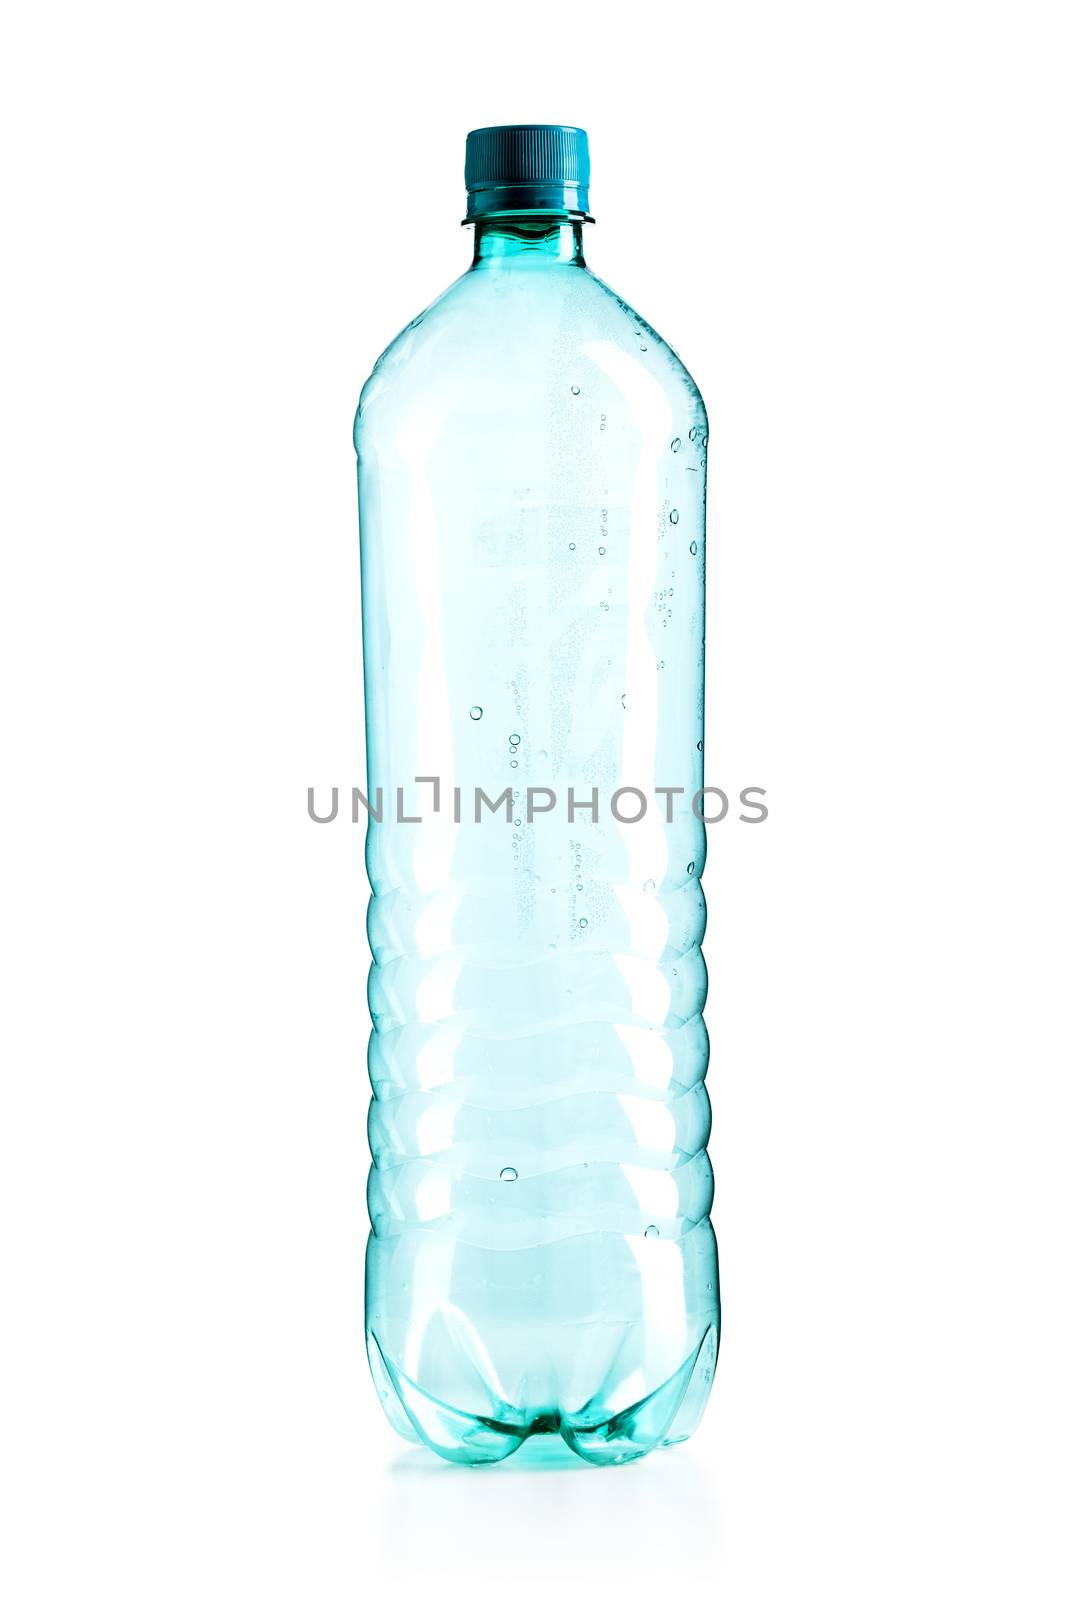 empty plastic bottle, isolated on white background